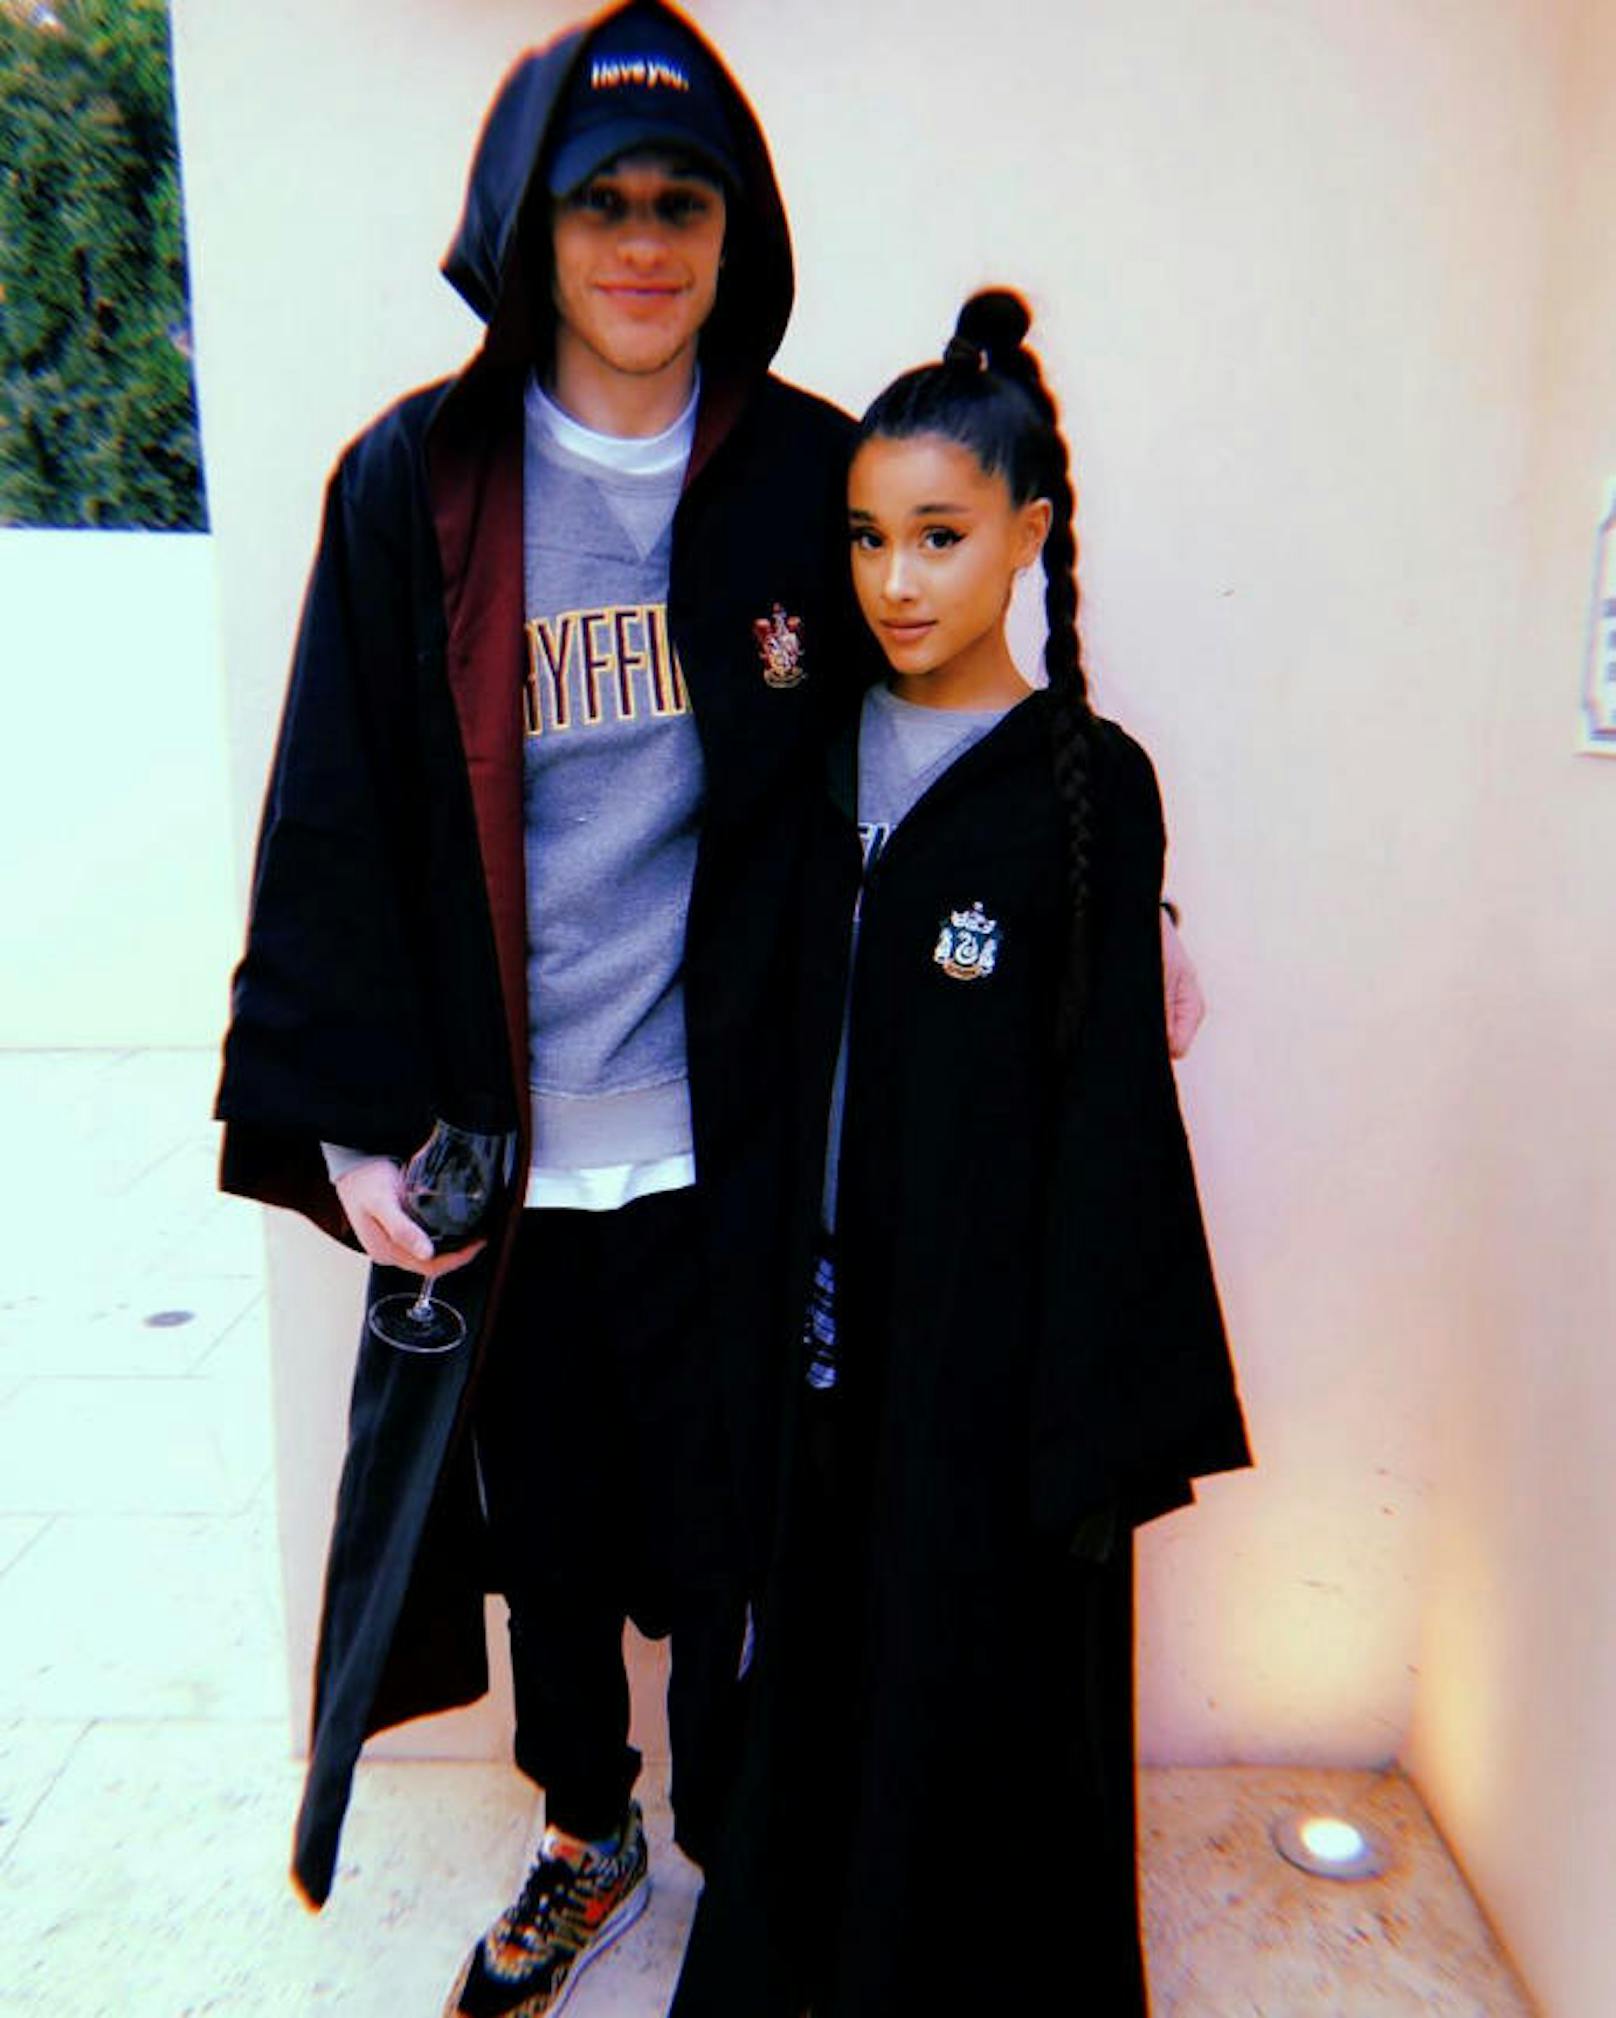 01.06.2018: Ariana Grande ist wieder vergeben. Schauspieler Pete Davidson ist nicht nur gleich alt, sondern auch Harry-Potter-Fan. Einziger Unterschied: Er ist Team Gryffindor, während sie ein Slytherin-Shirt trägt.